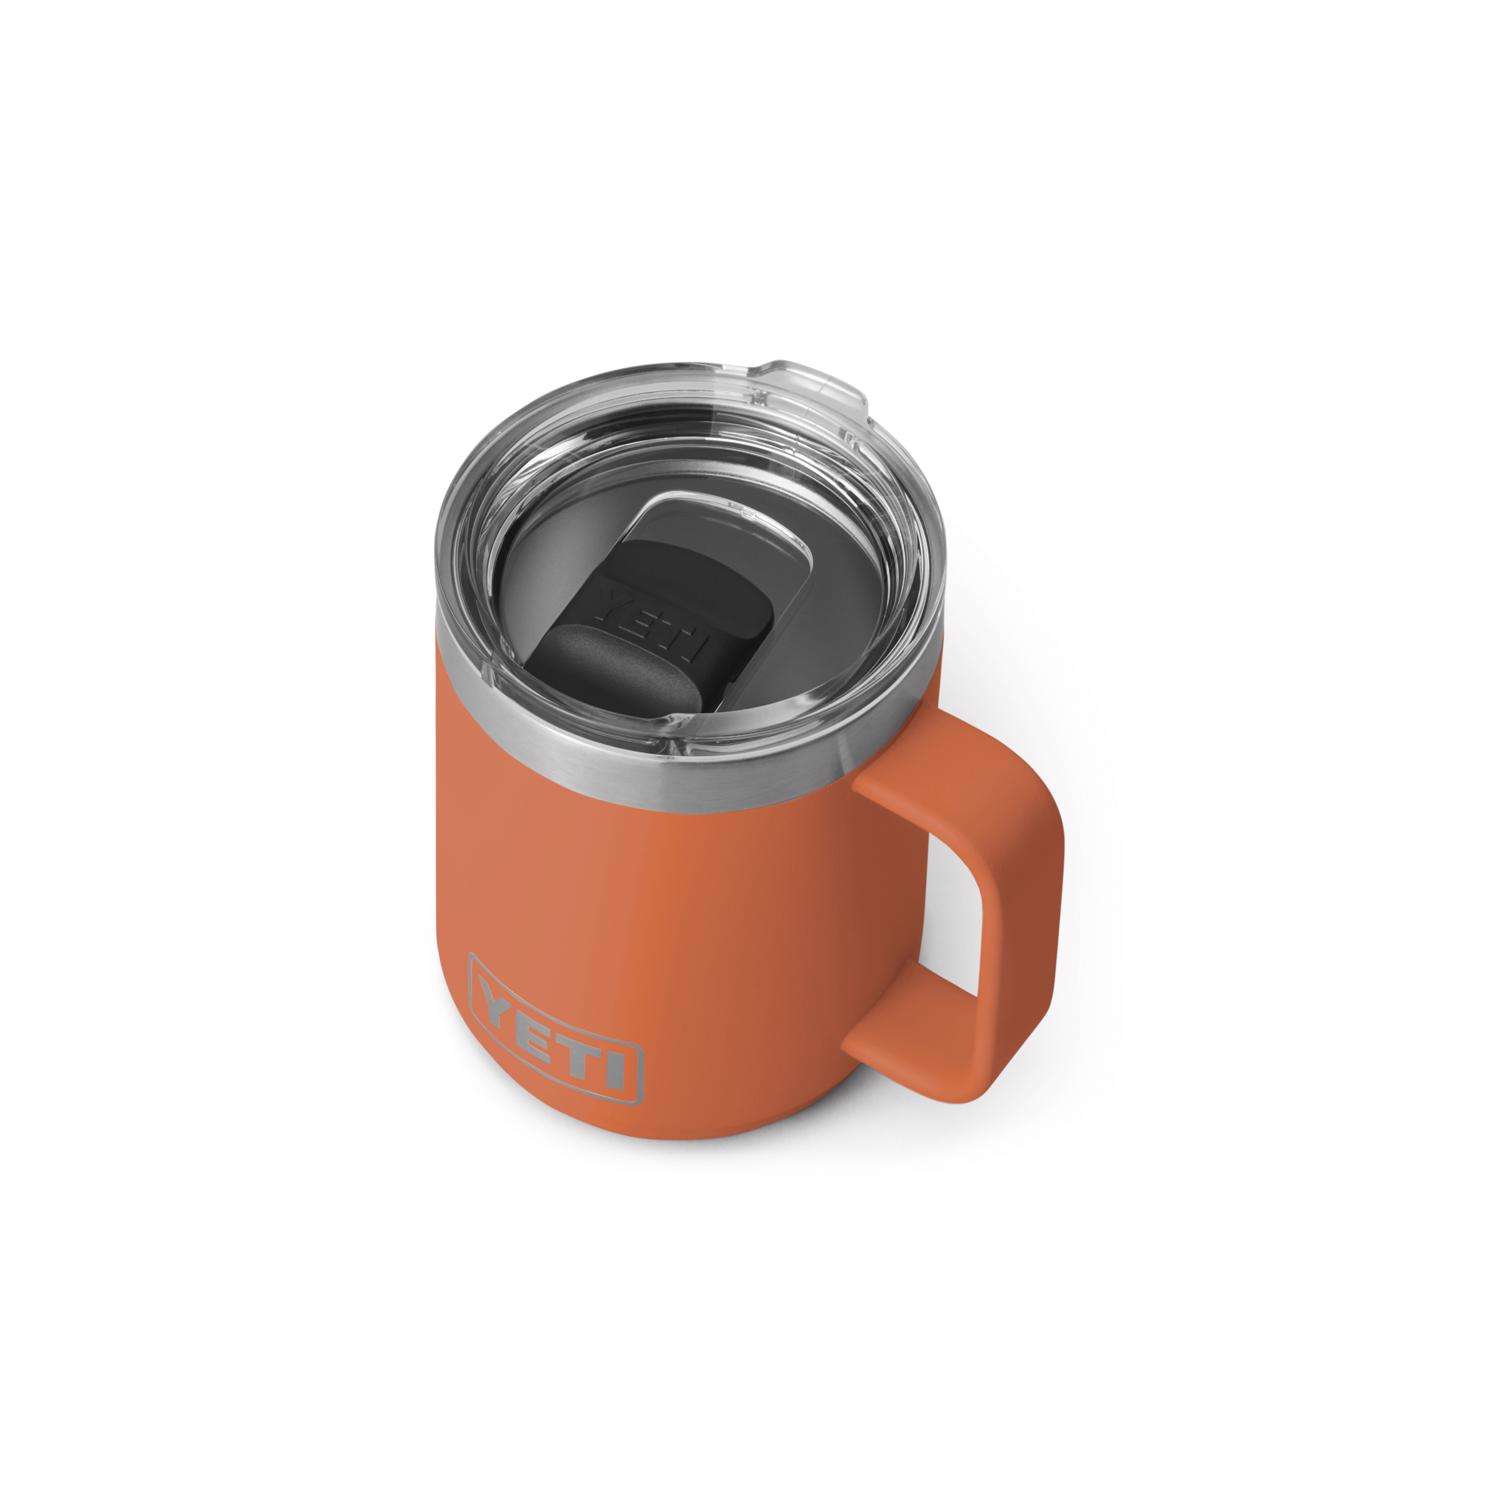 YETI Rambler 10 oz White BPA Free Mug with MagSlider Lid - Ace Hardware